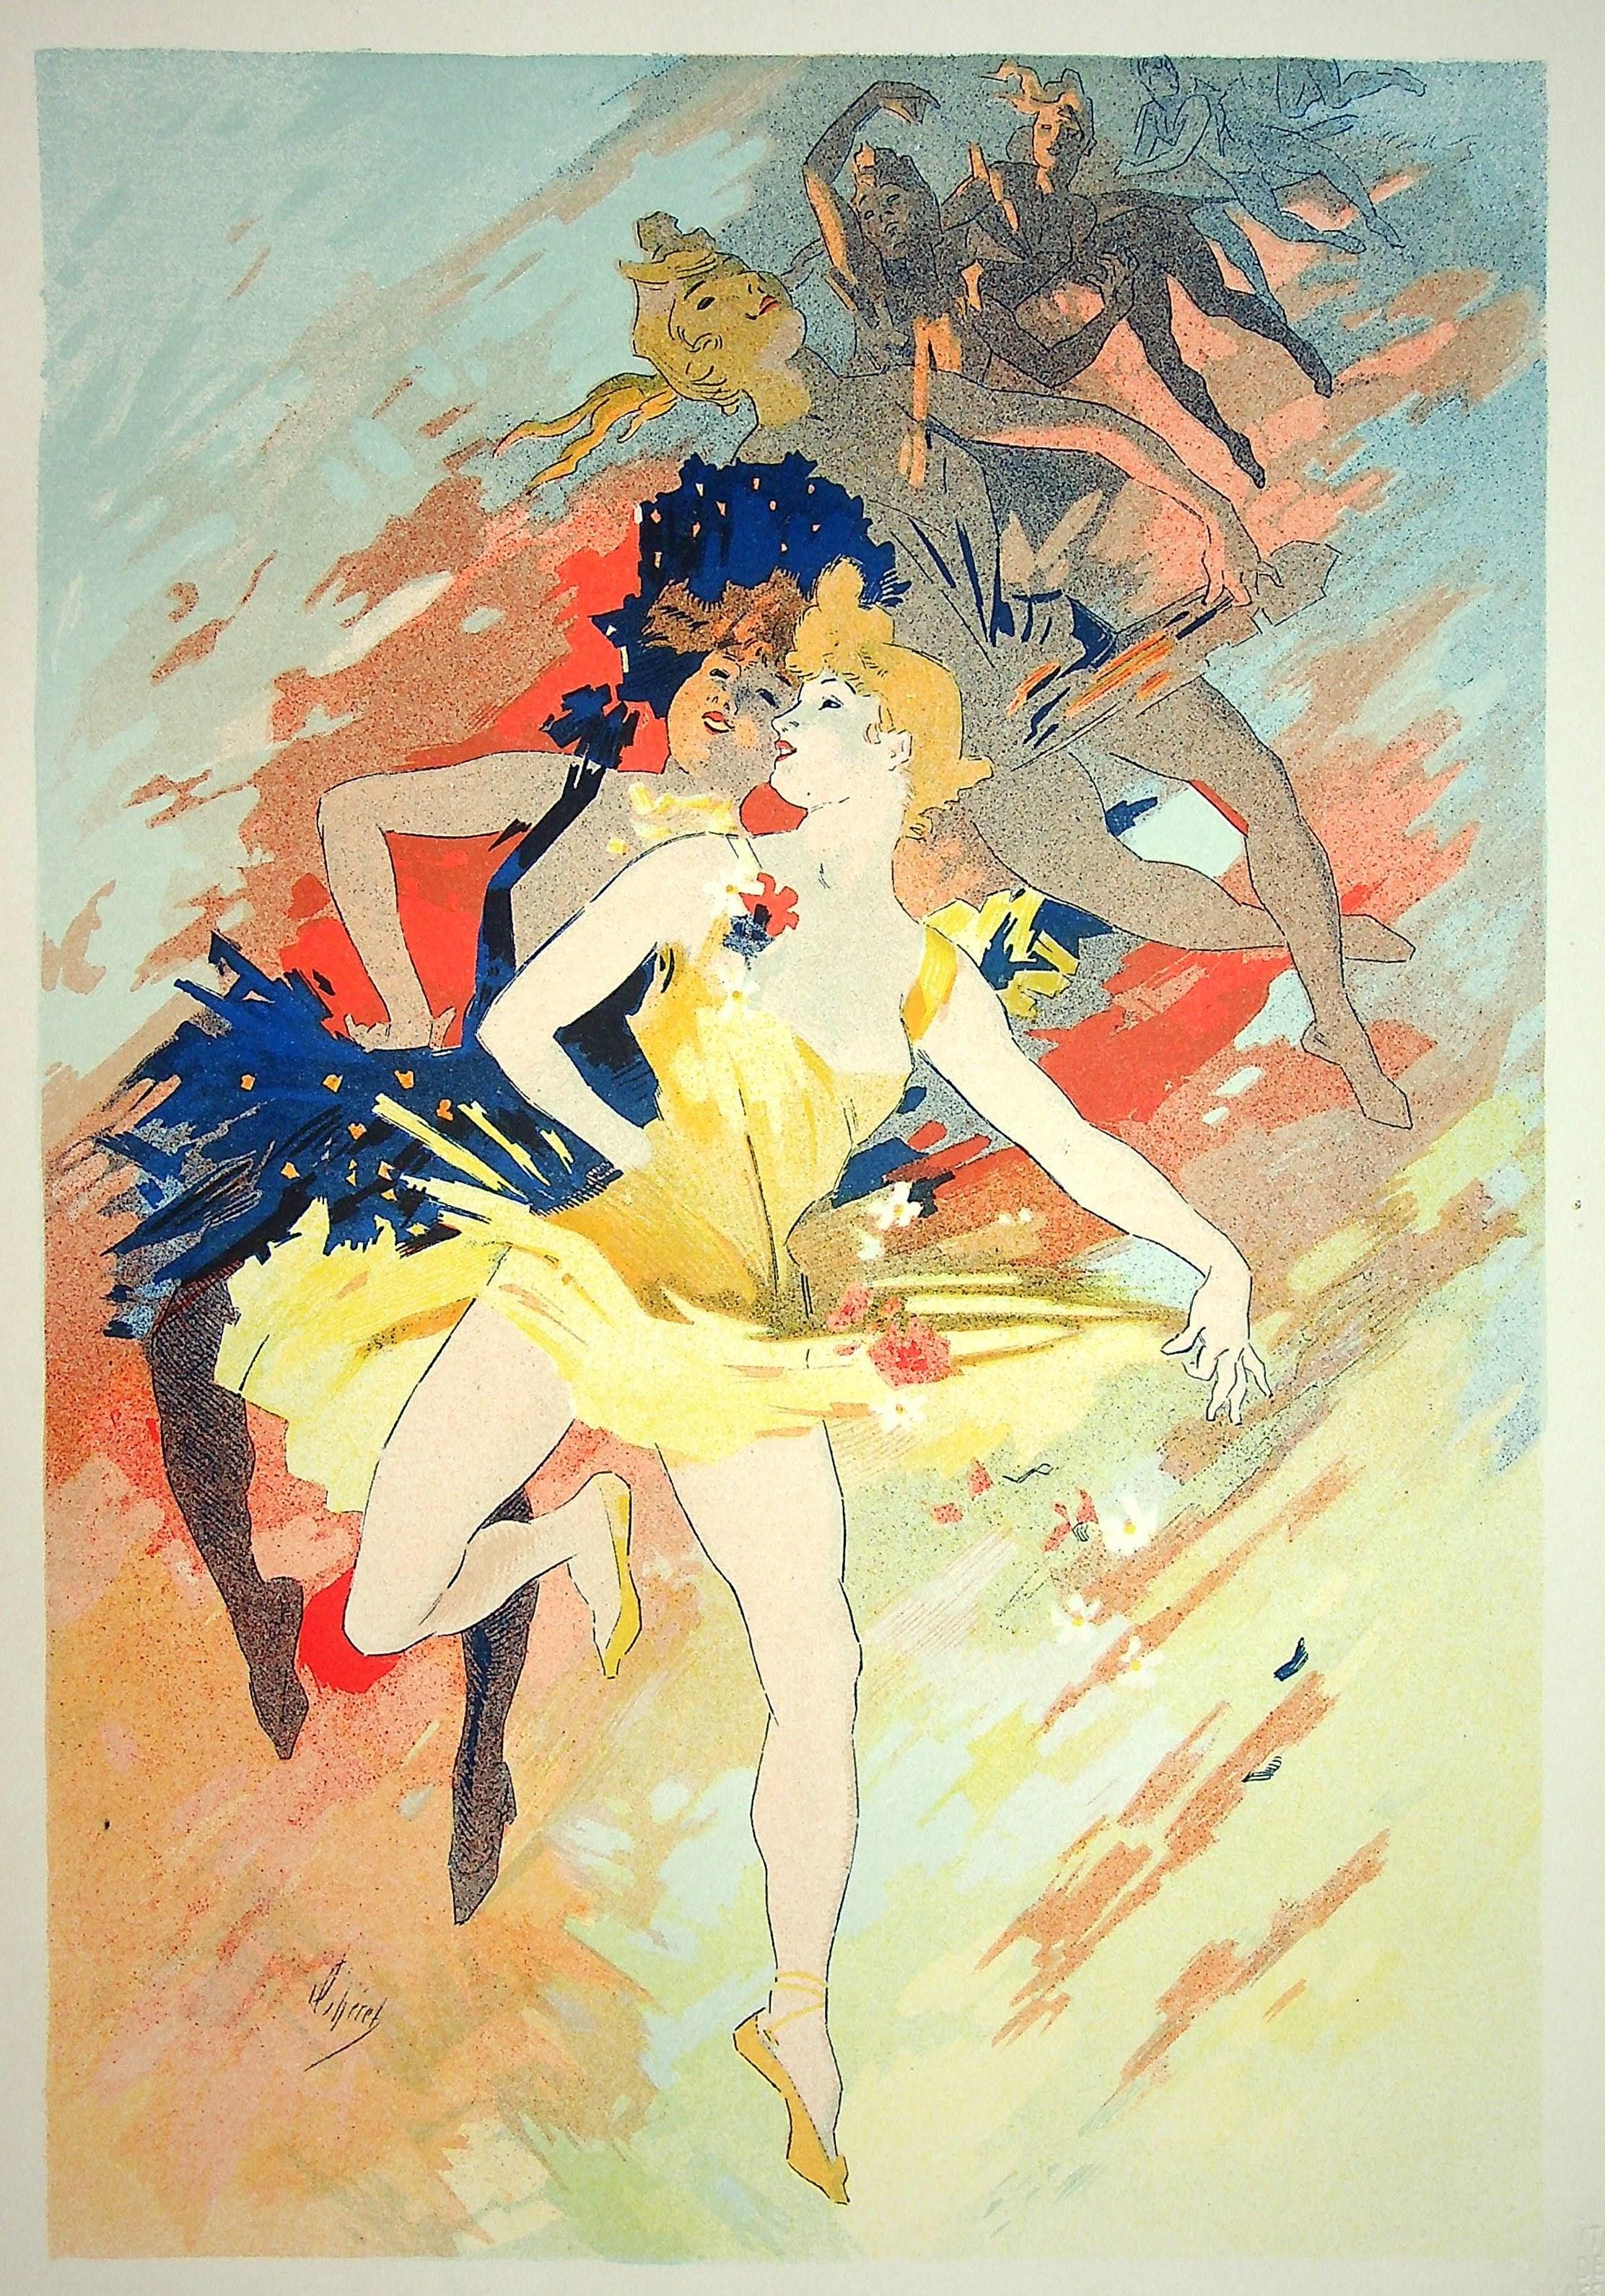 The Dance - Original Lithograph (Les Maîtres de l'Affiche), 1900 - Print by Jules Chéret